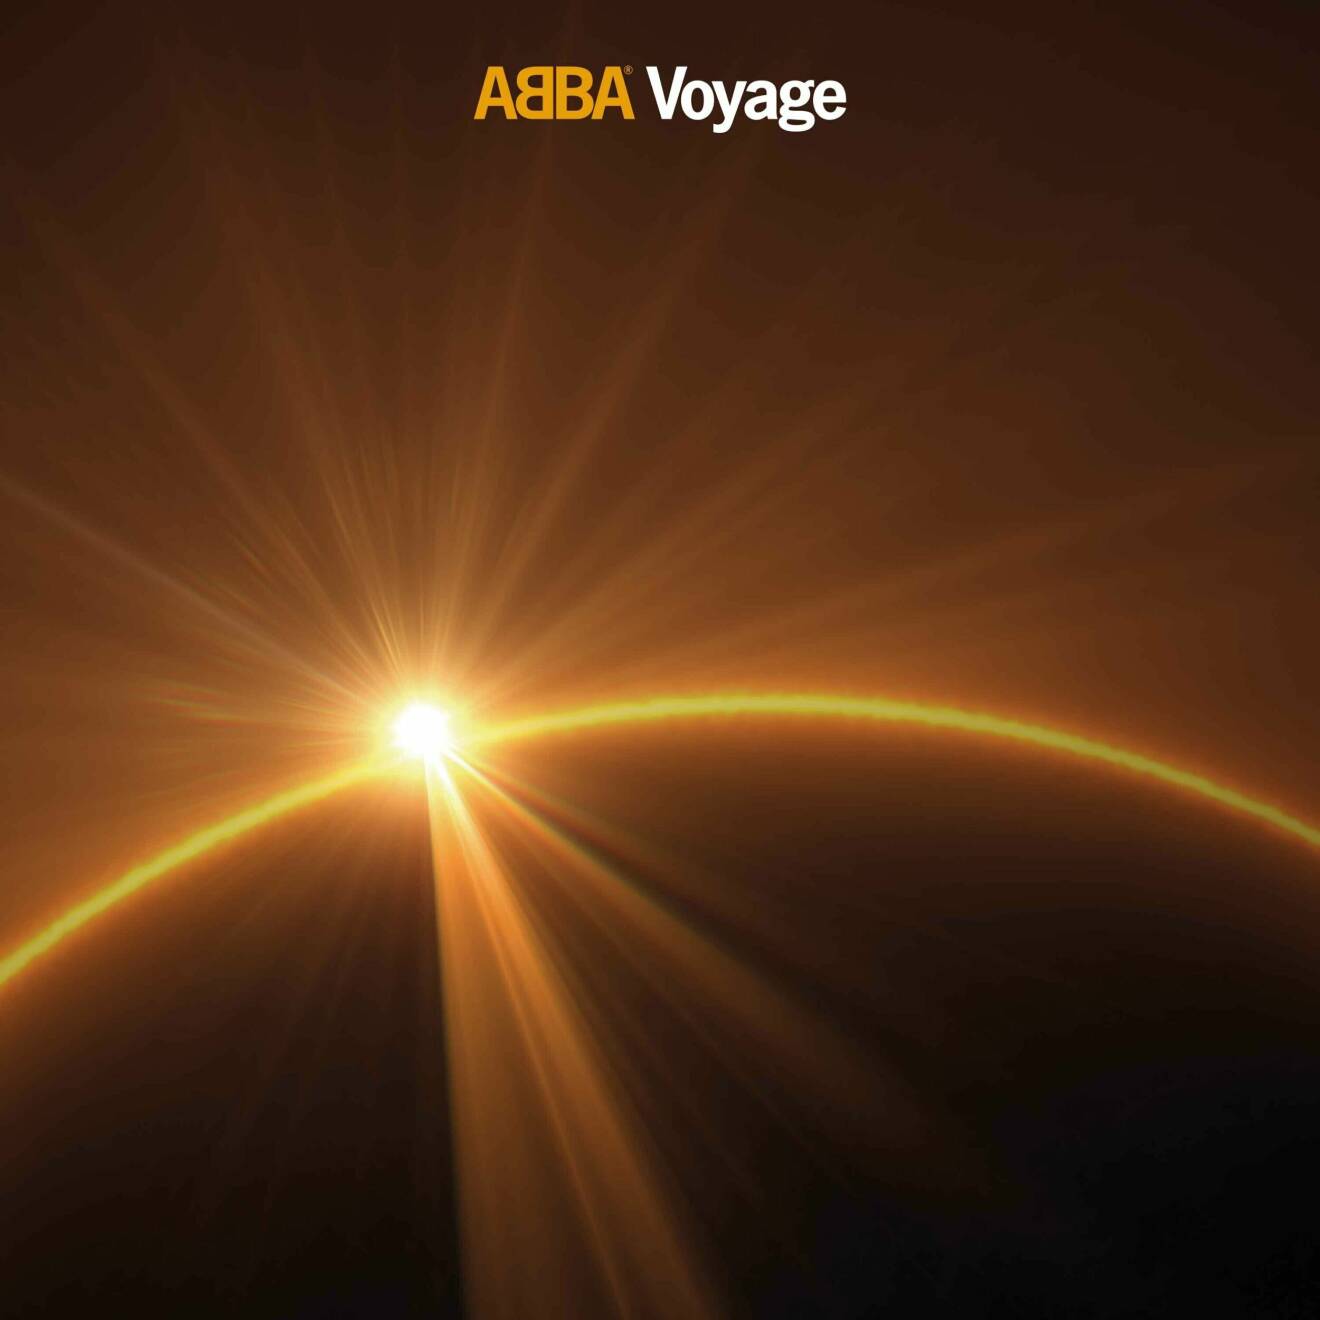 Abba Voyage album recension